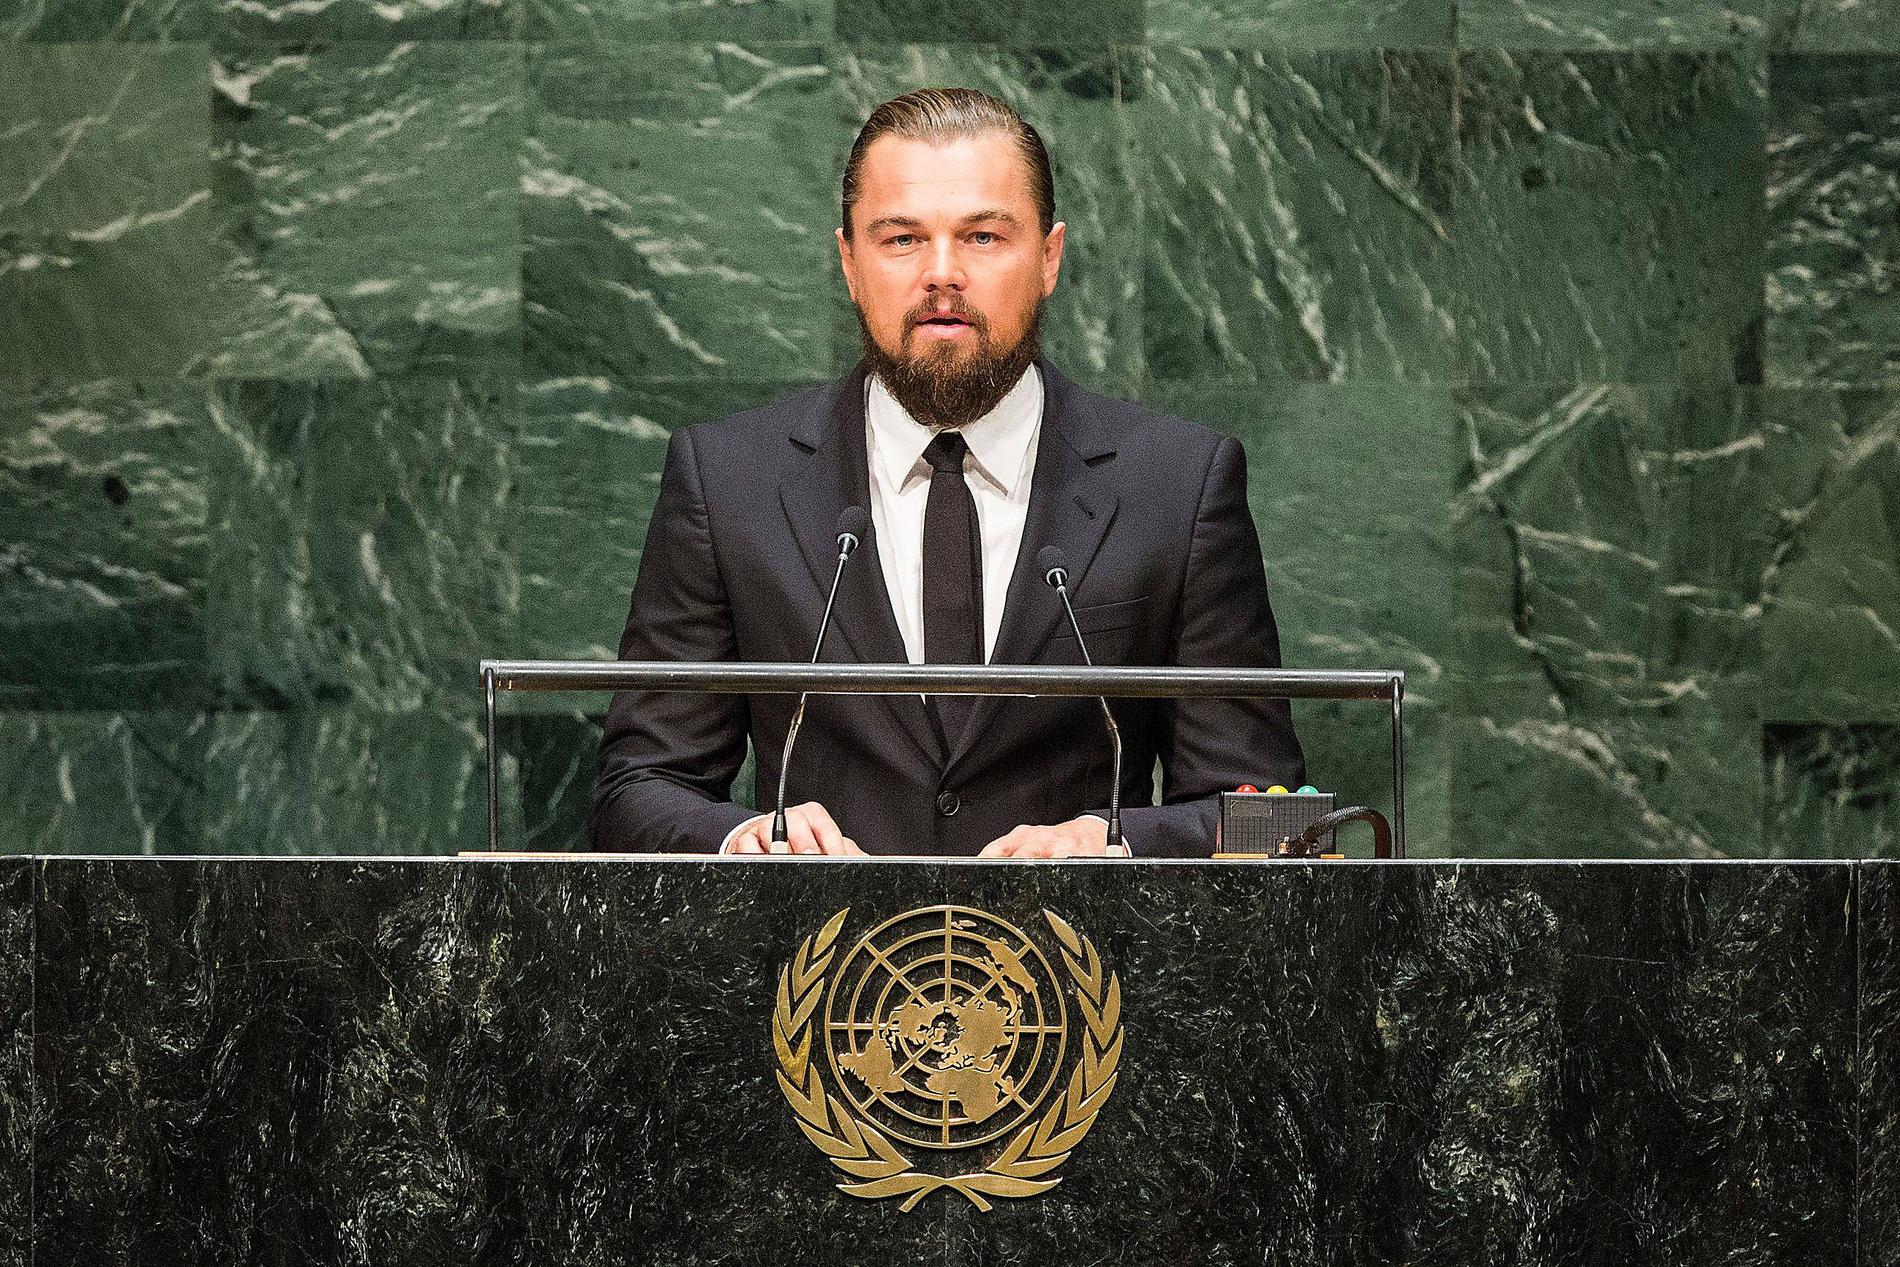 LEVER INTE SOM HAN LÄR Leonardo DiCaprio höll tal under FN:s klimattoppmöte förra året då han uppmanade världens ­ledare att ta ansvar för miljön. Nu upp­dagas att stjärnan flög privatjet sex gånger på lika många veckor.